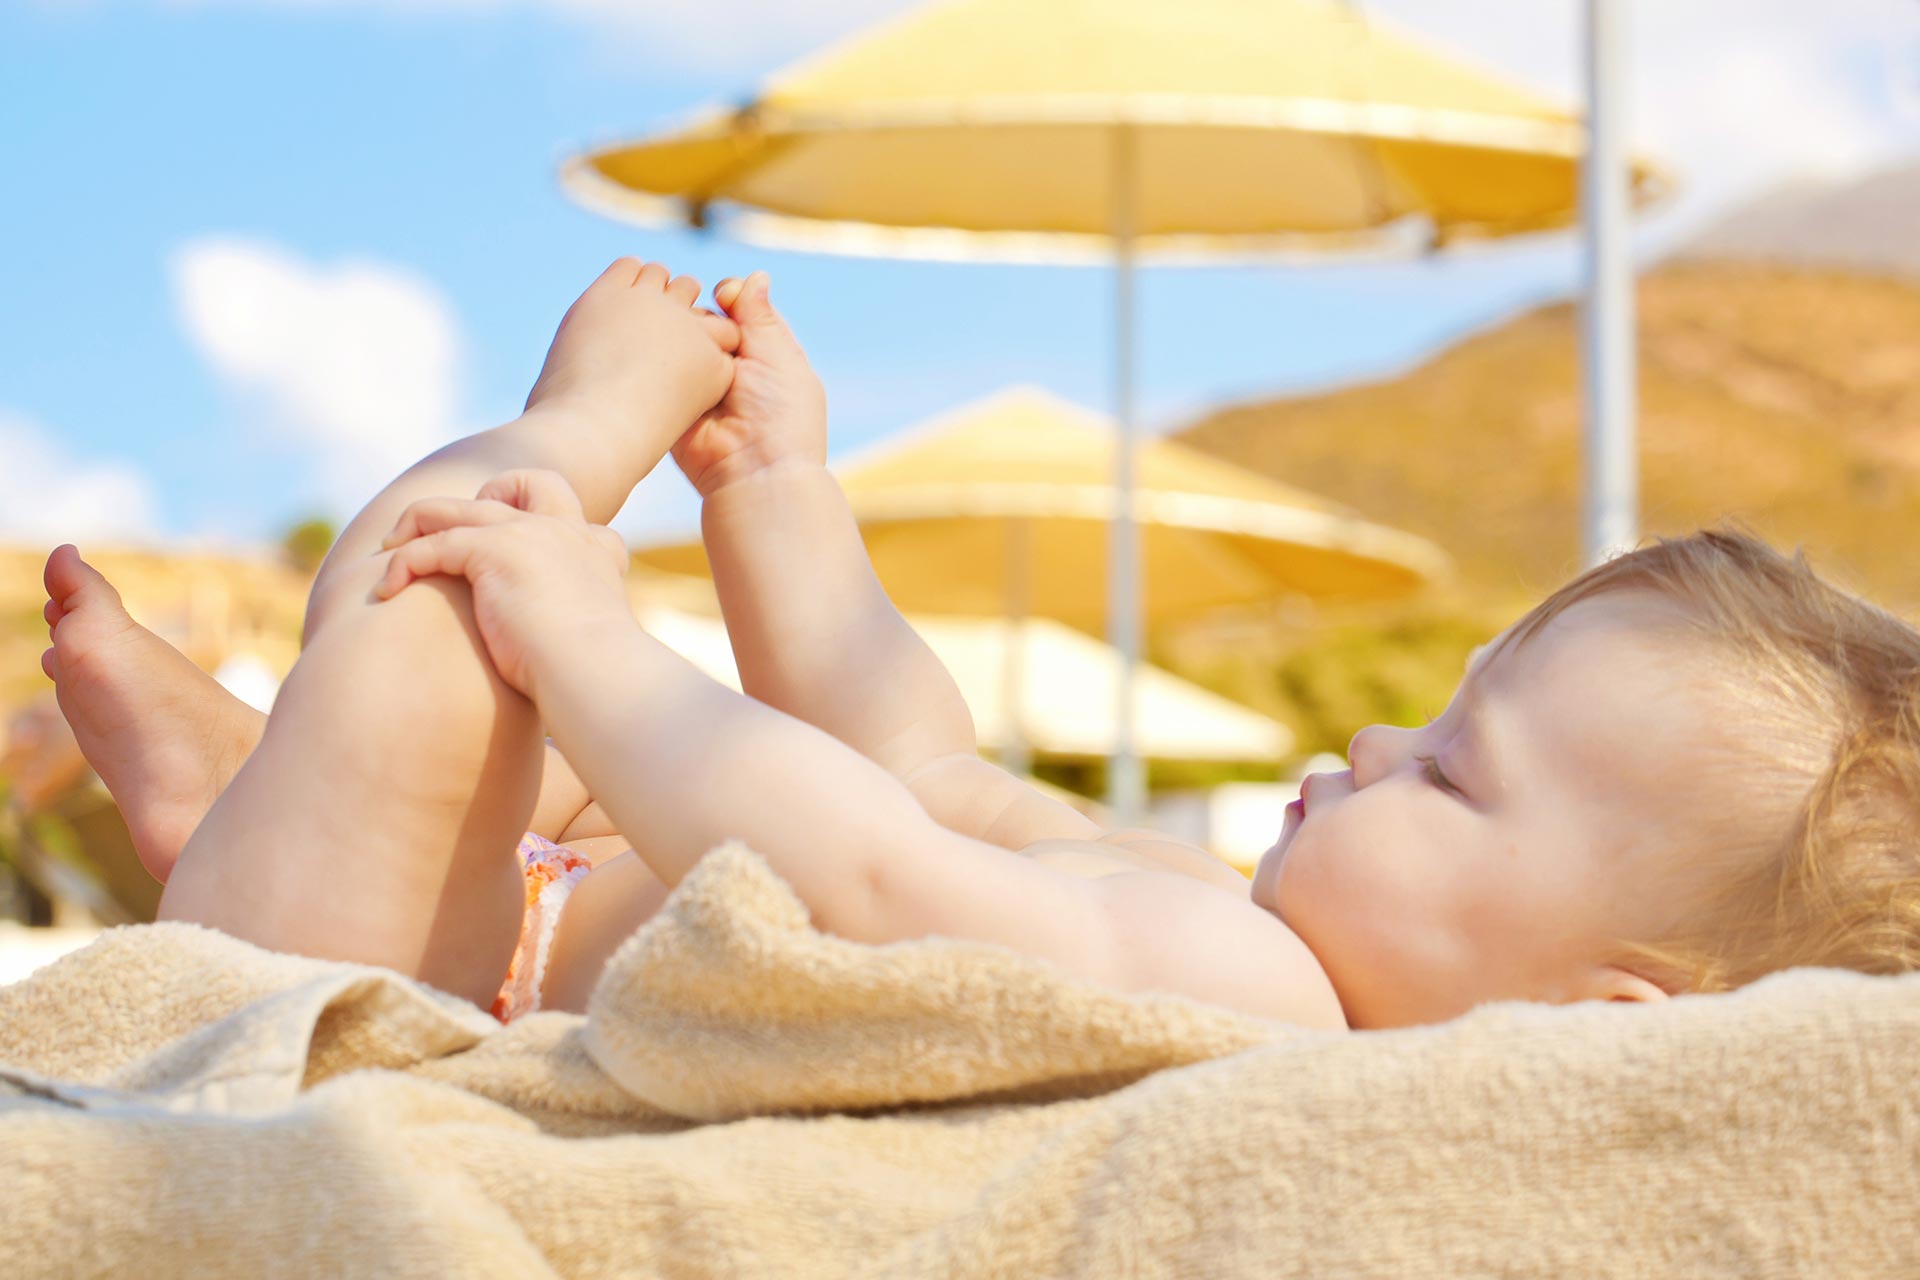 Bébé au soleil : quels dangers et quelles vertus ? 